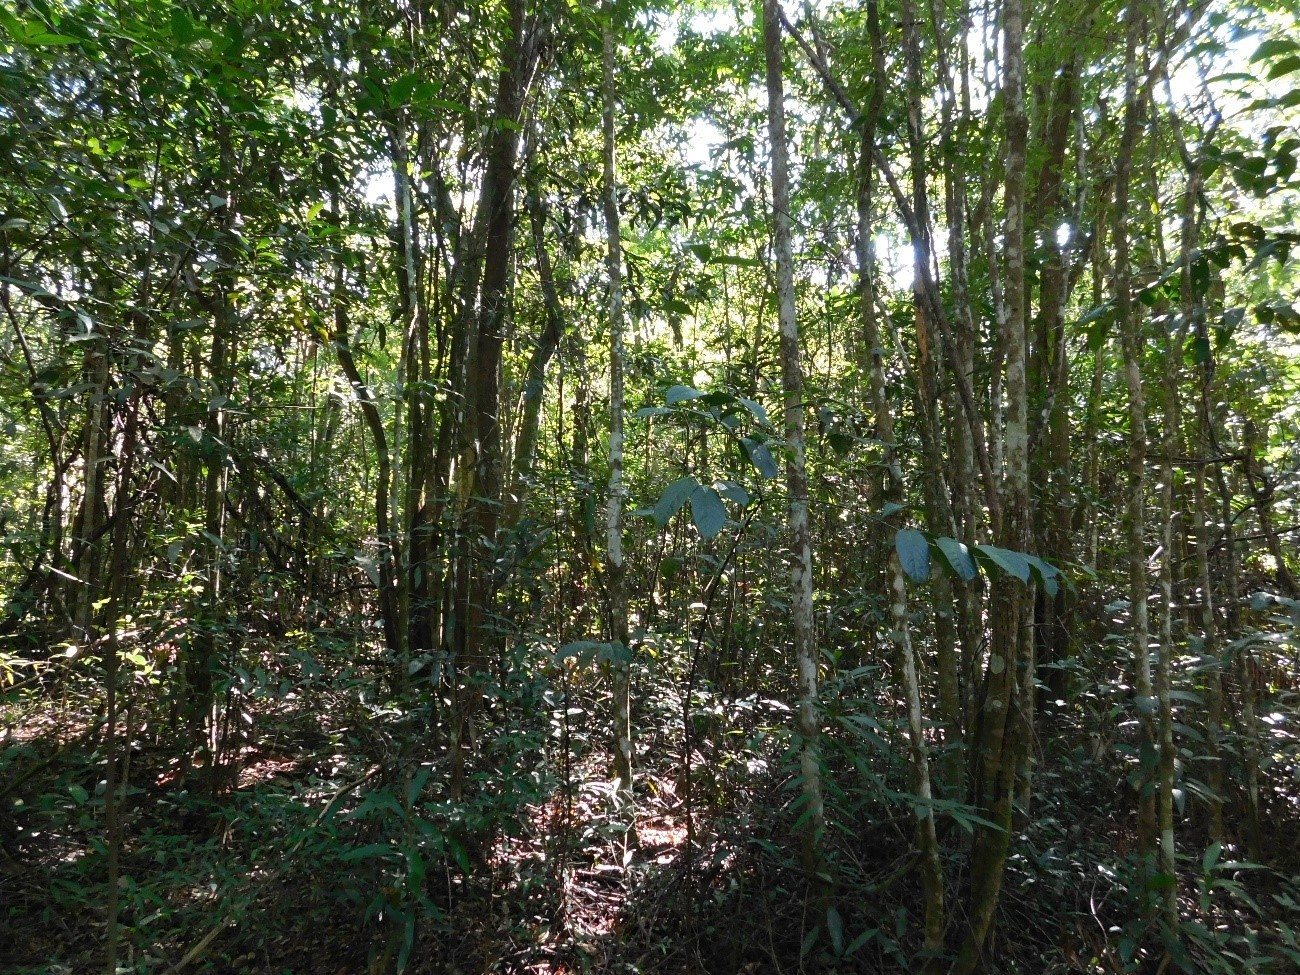 Falta de manejo adequado reduz biodiversidade do Cerrado, aponta estudo da Unicamp